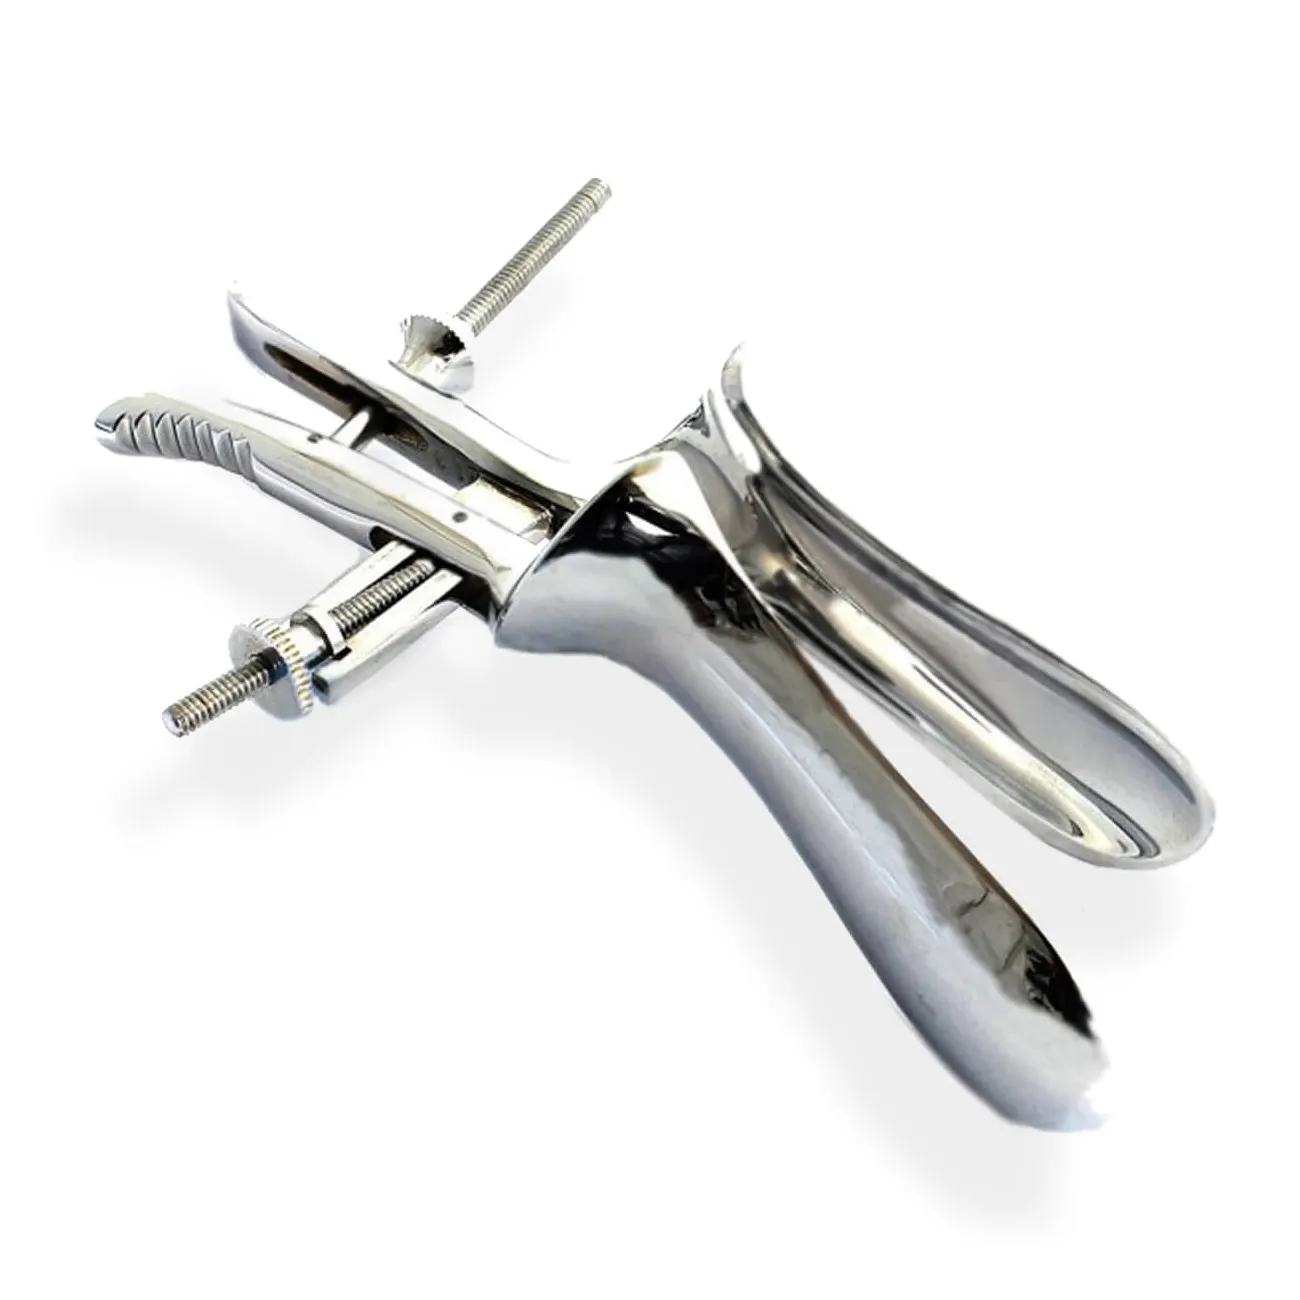 Instrumento de ginecologia para espéculo vaginal feito sob medida, faça seu próprio estilo, mais recente da ONE WISH HEALTH CARES